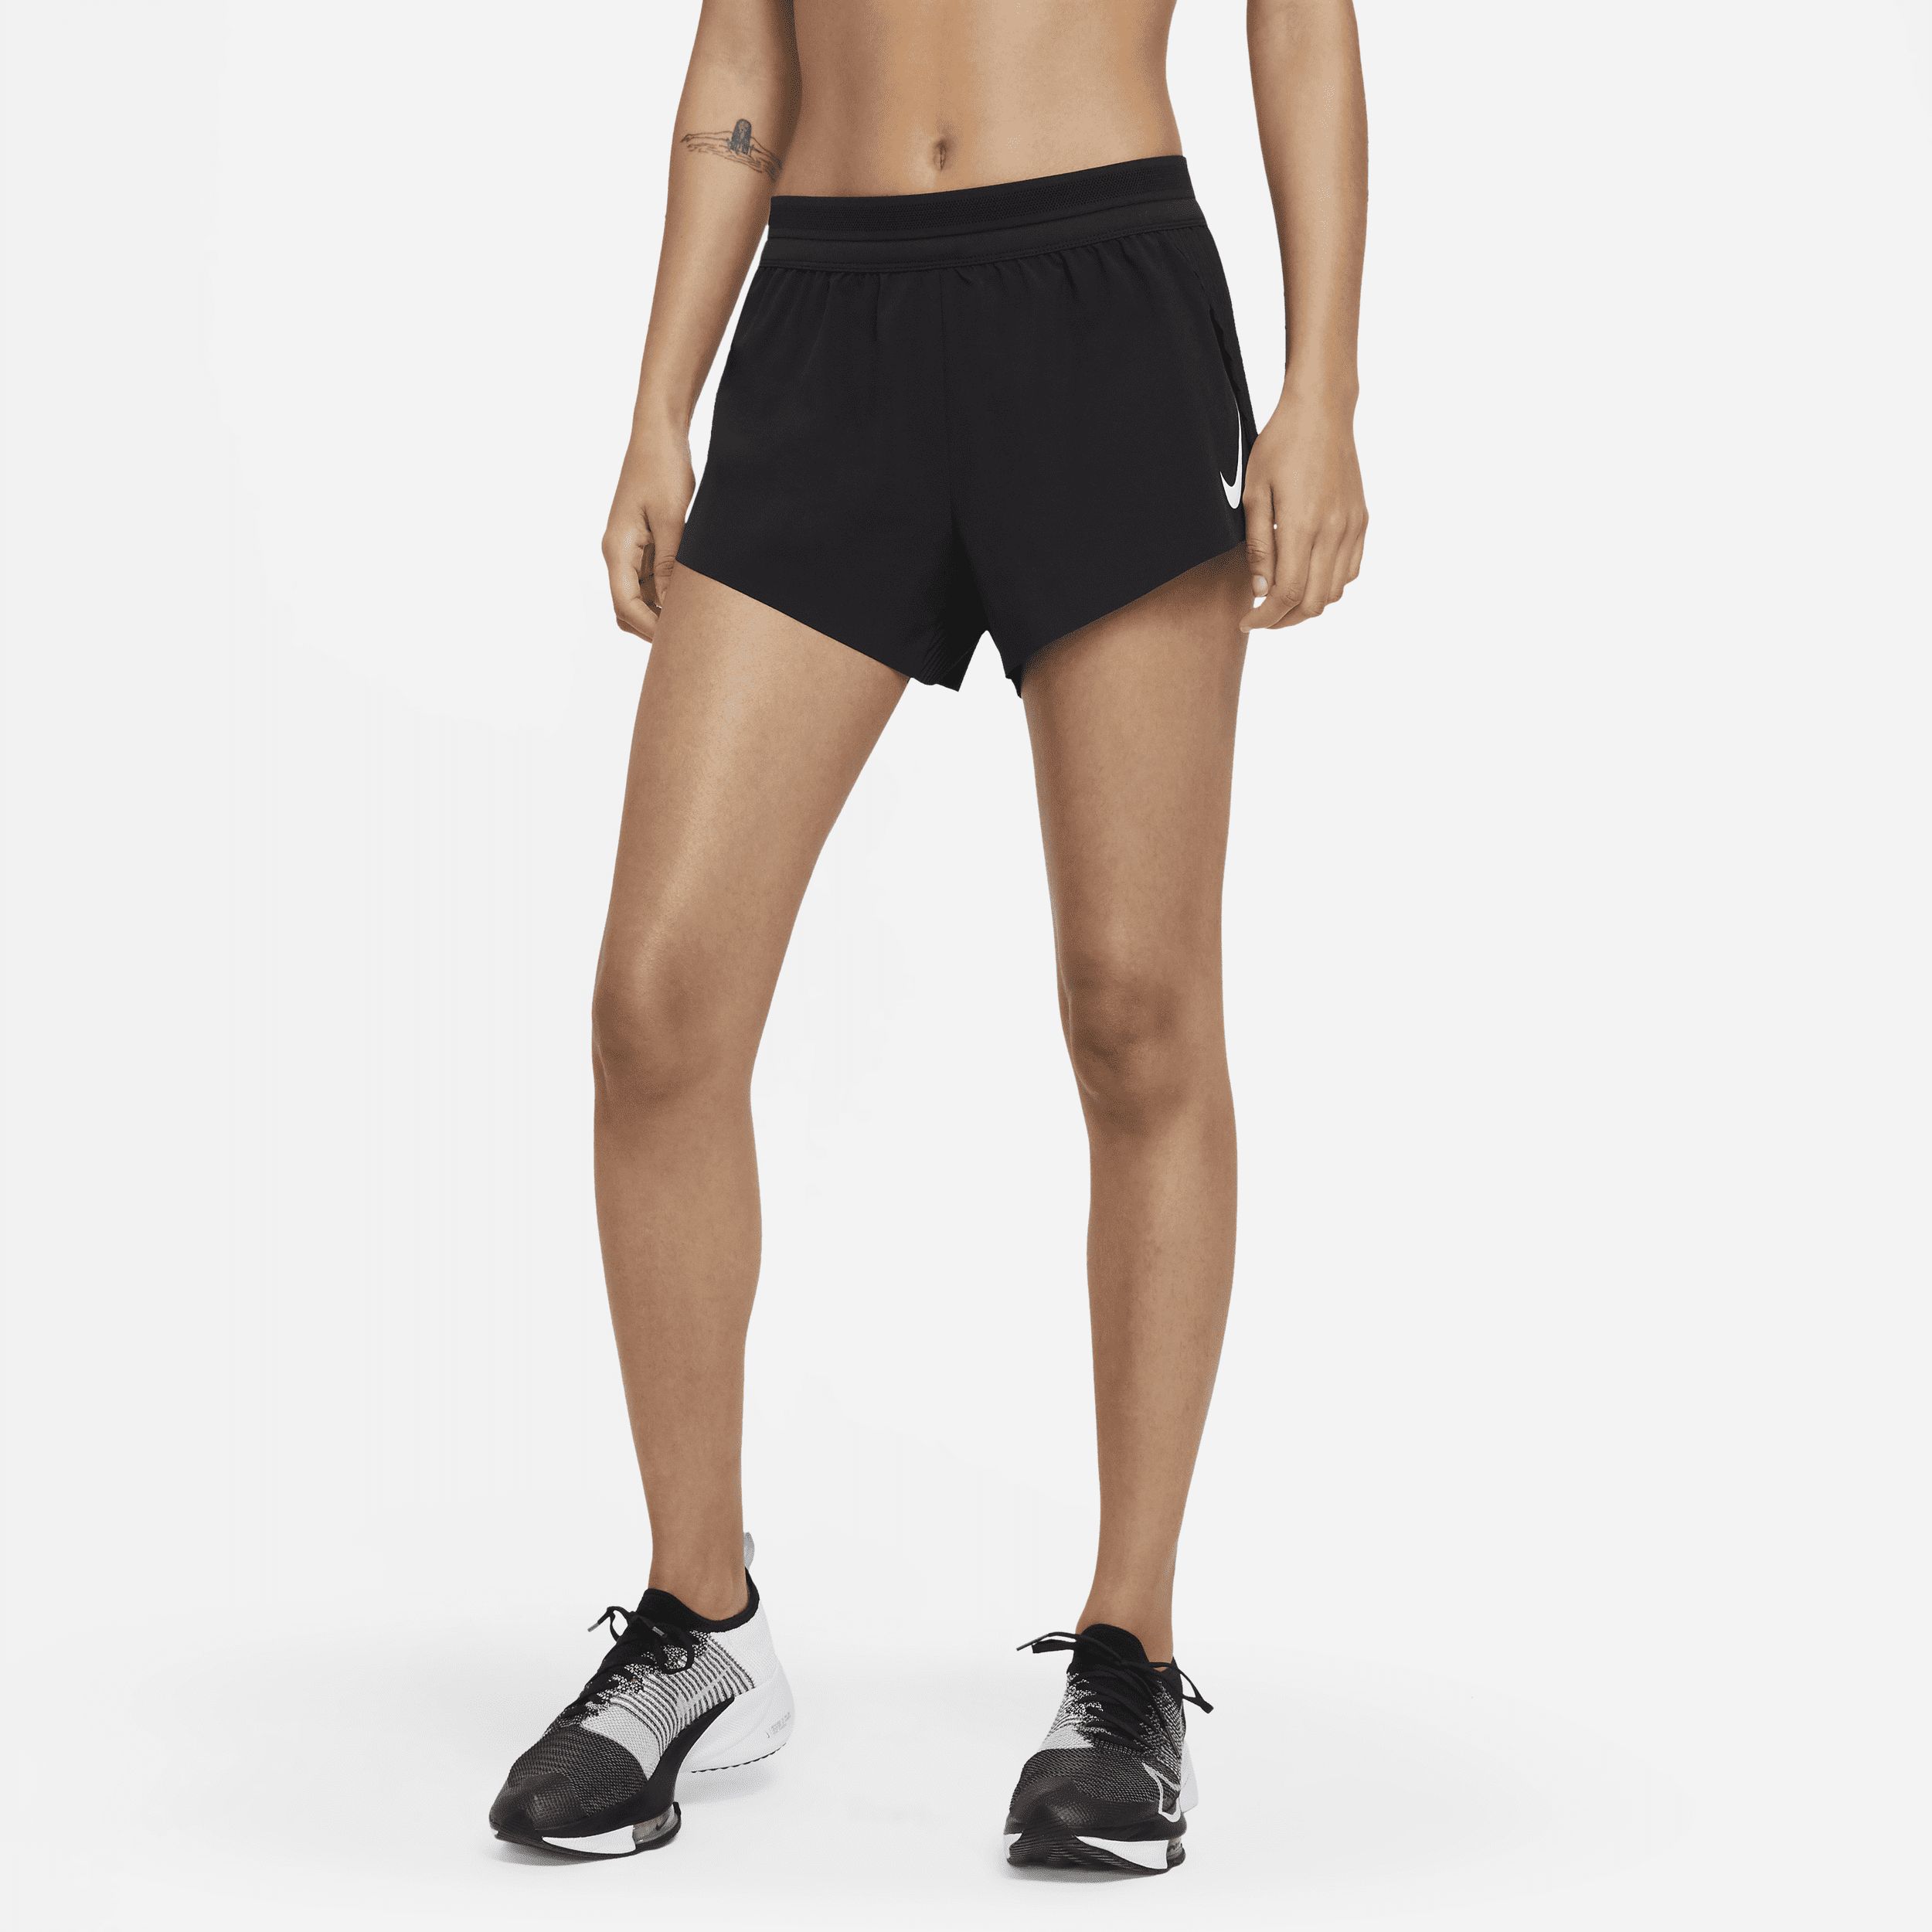 Nike Women's AeroSwift Running Shorts in Black, Size: Large | CZ9398-010 | Nike (US)